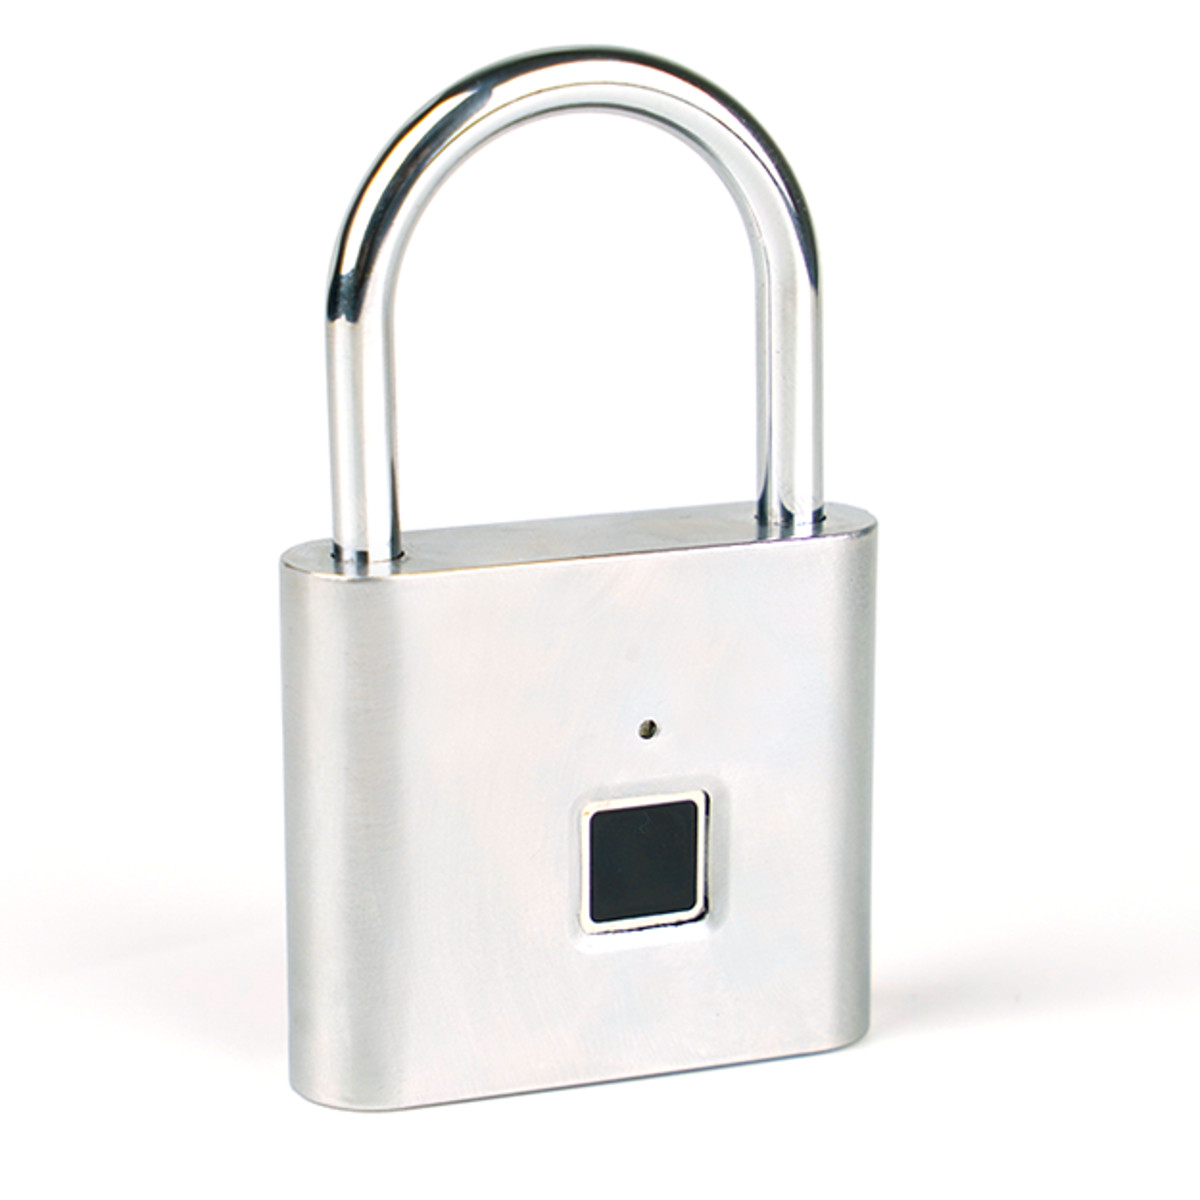 

Security keyless USB Rechargeable Door Lock Fingerprint Smart Padlock Quick Unlock Zinc Alloy Metal Self Developing Chip